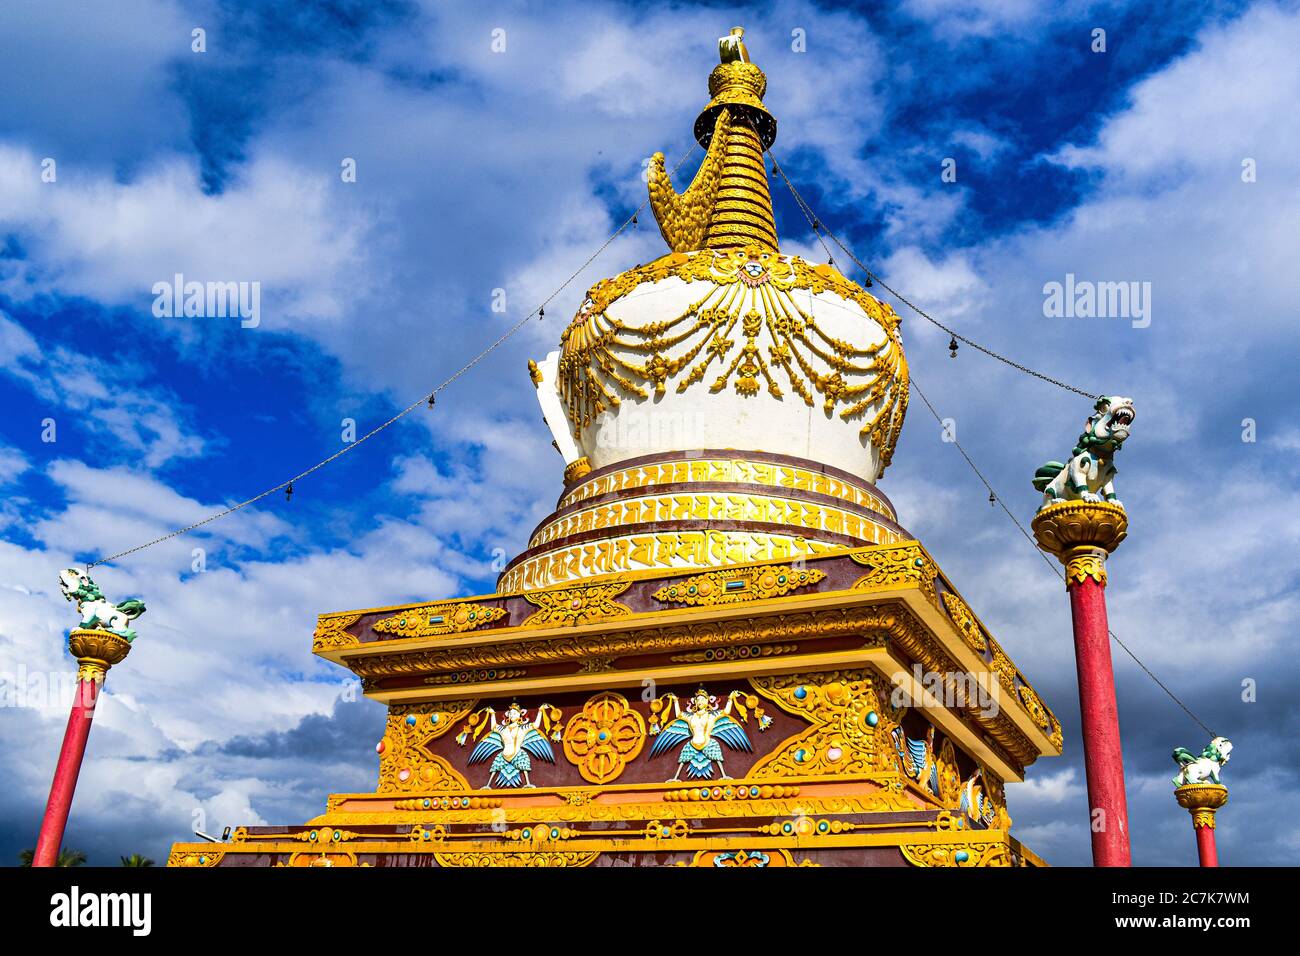 Un monument de la statue bouddhiste . il contient de belles peintures en or et blanc avec ciel bleu derrière Banque D'Images